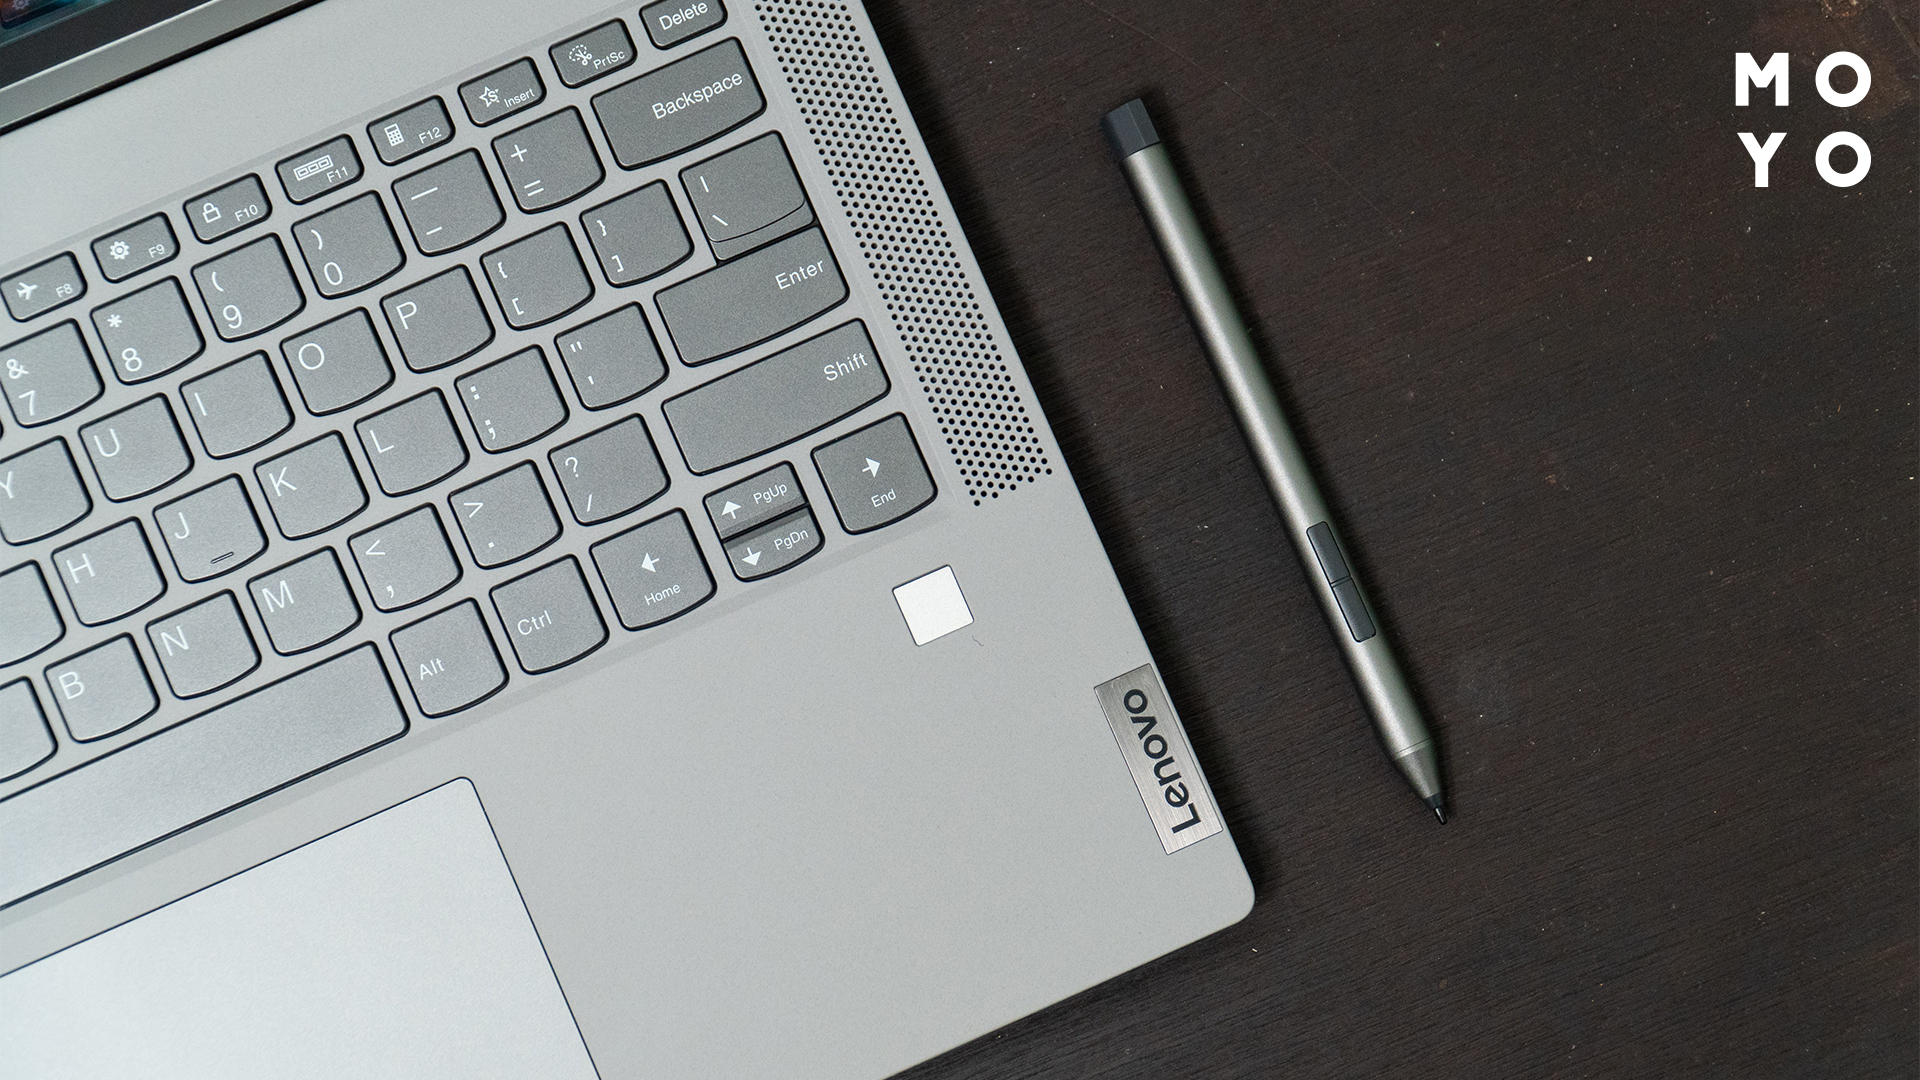 сірий олівець лежить поряд із ноутбуком Lenovo